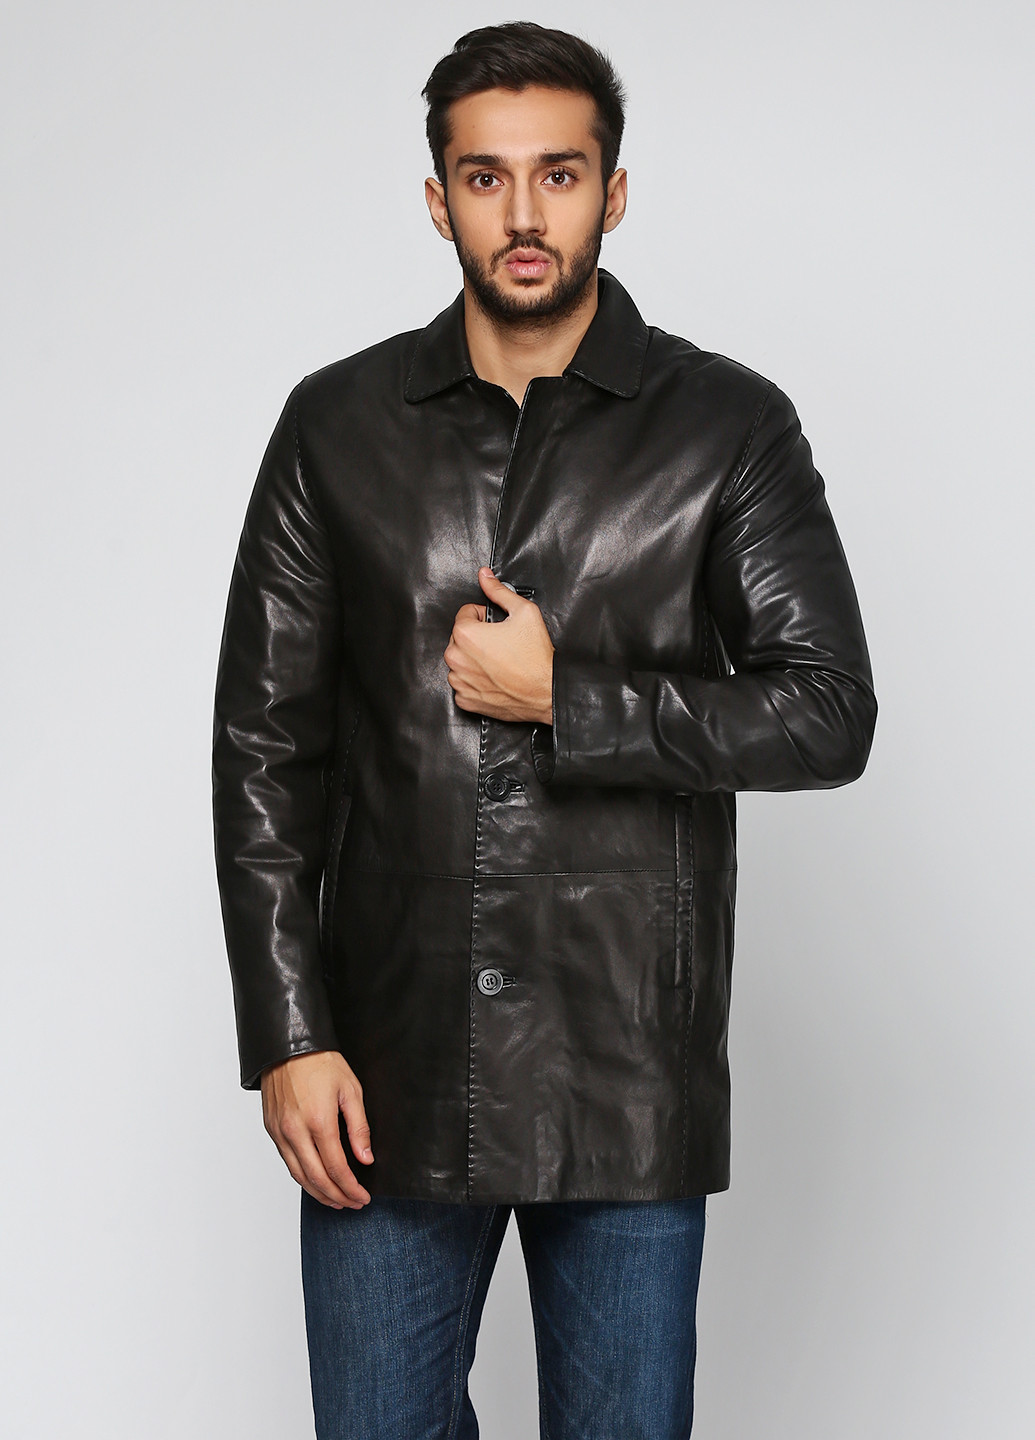 Черная демисезонная куртка кожаная Franco Rossetti